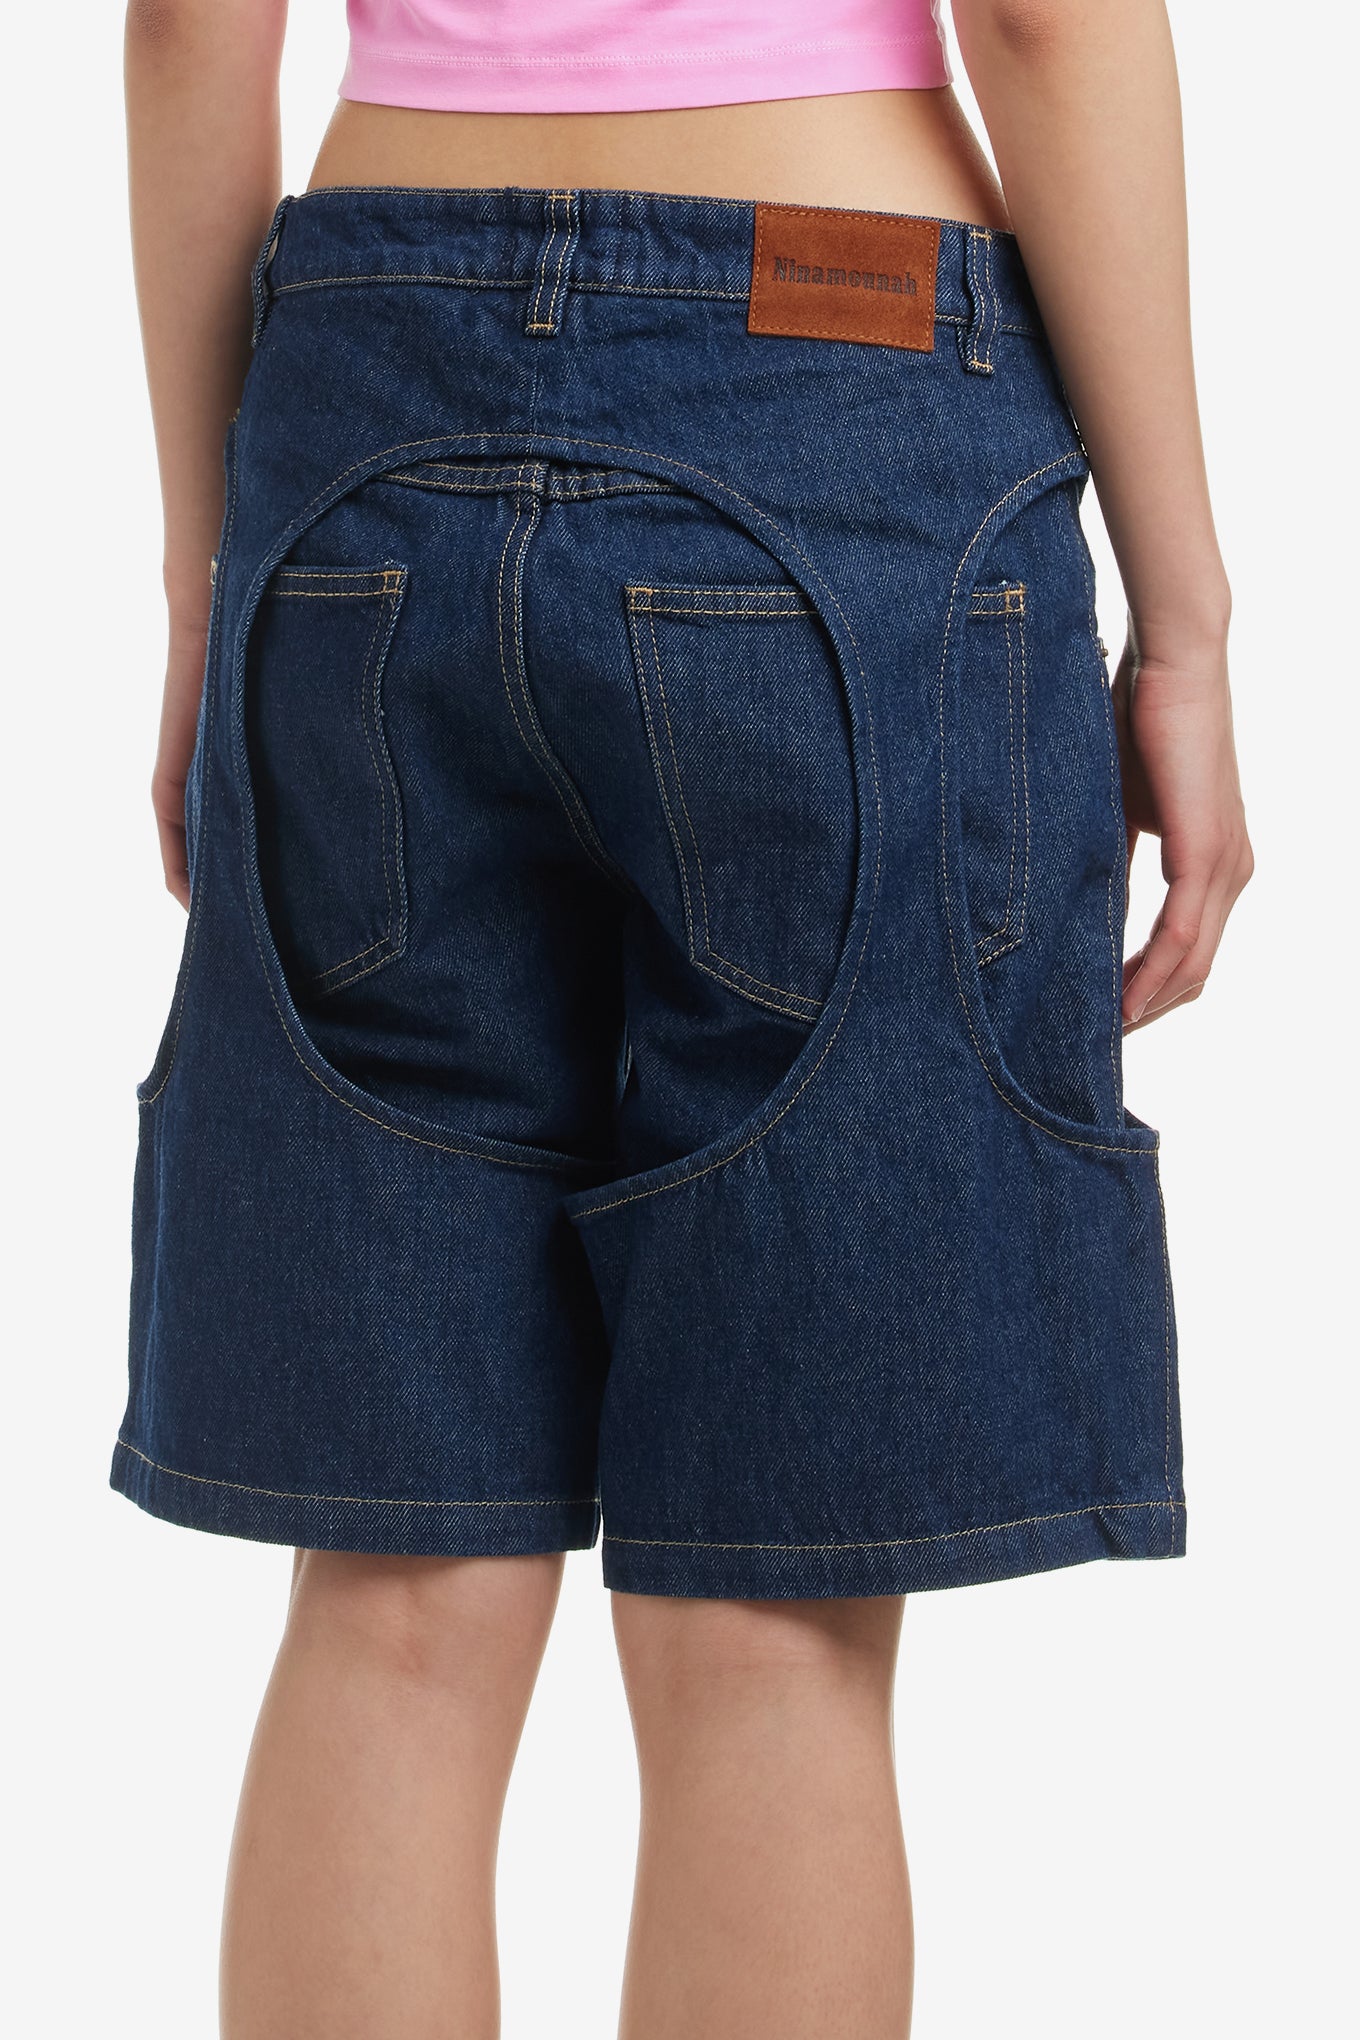 MINEDENIM Zeebra Denim Shurf Shorts サイズ2-